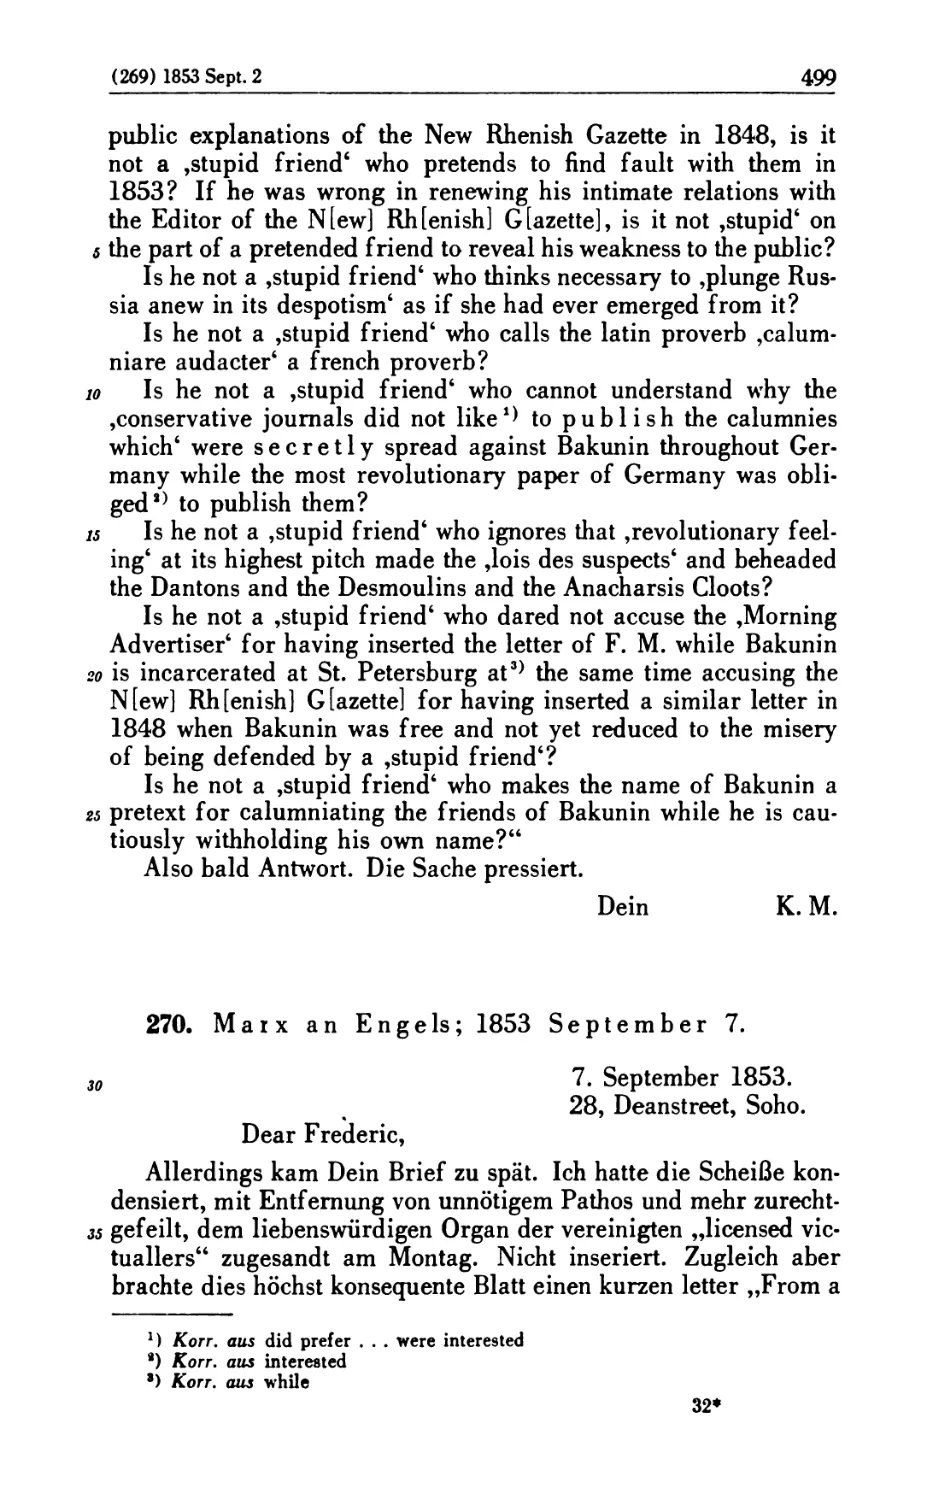 270. Marx an Engels; 1853 September 7